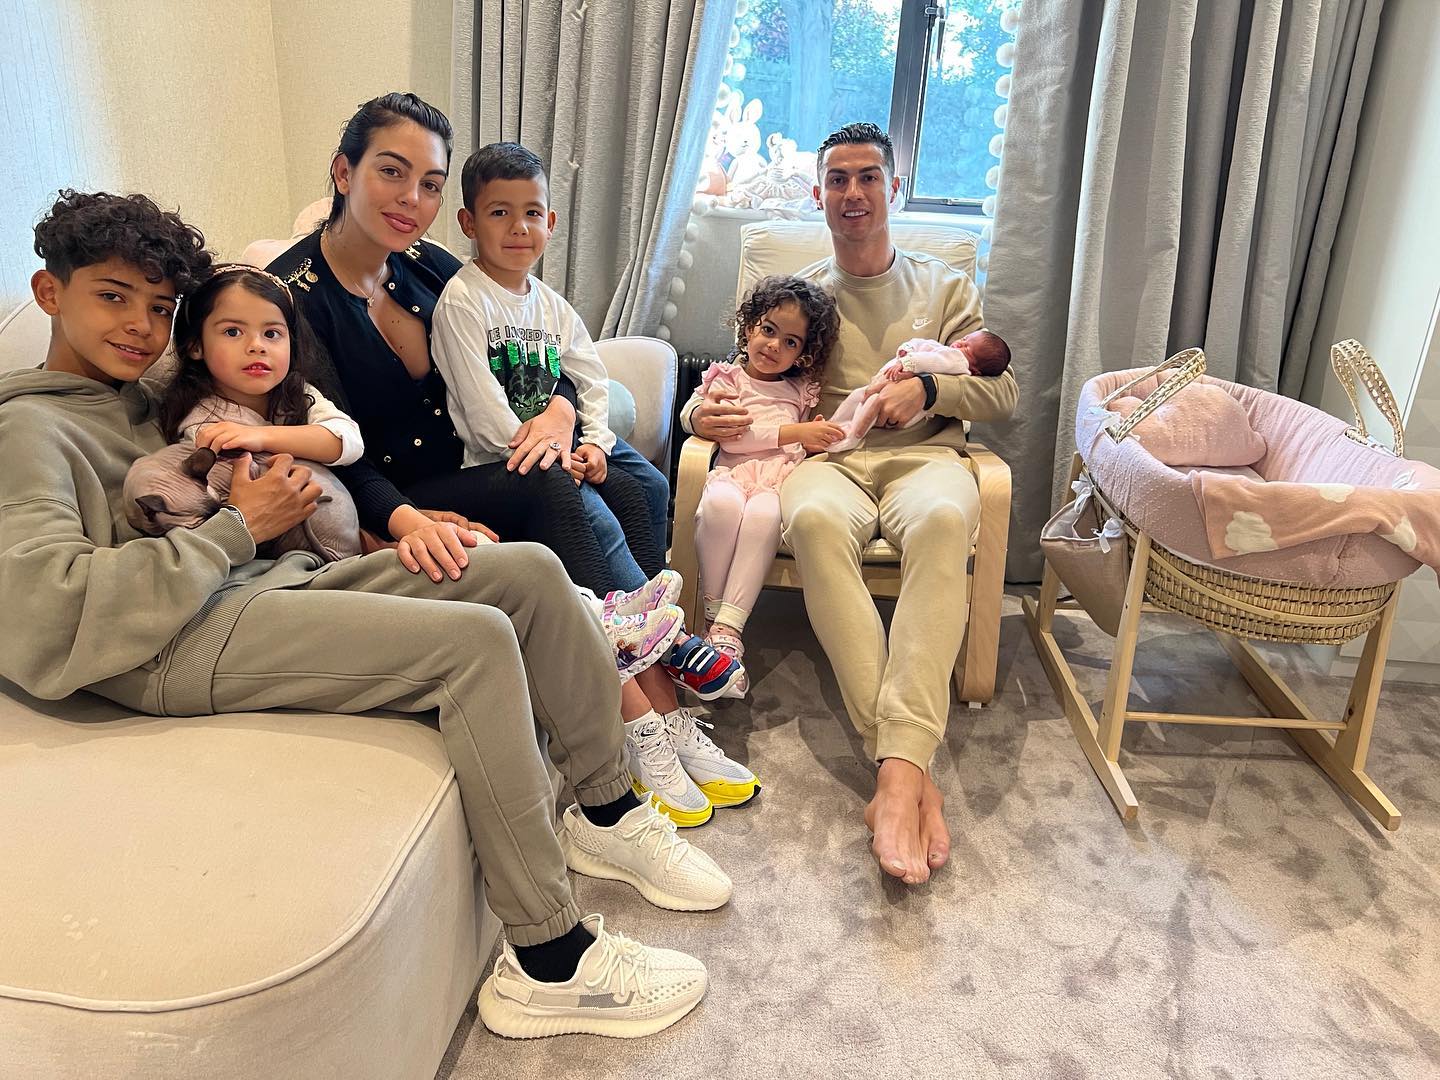 Ronaldo gia đình bé luôn là chủ đề được đông đảo người hâm mộ quan tâm. Xem hình ảnh Ronaldo với gia đình bé vô cùng đáng yêu, hạnh phúc và đầy năng lượng, bạn sẽ thấy được tình cảm gia đình cực kỳ ấm áp và xúc động.